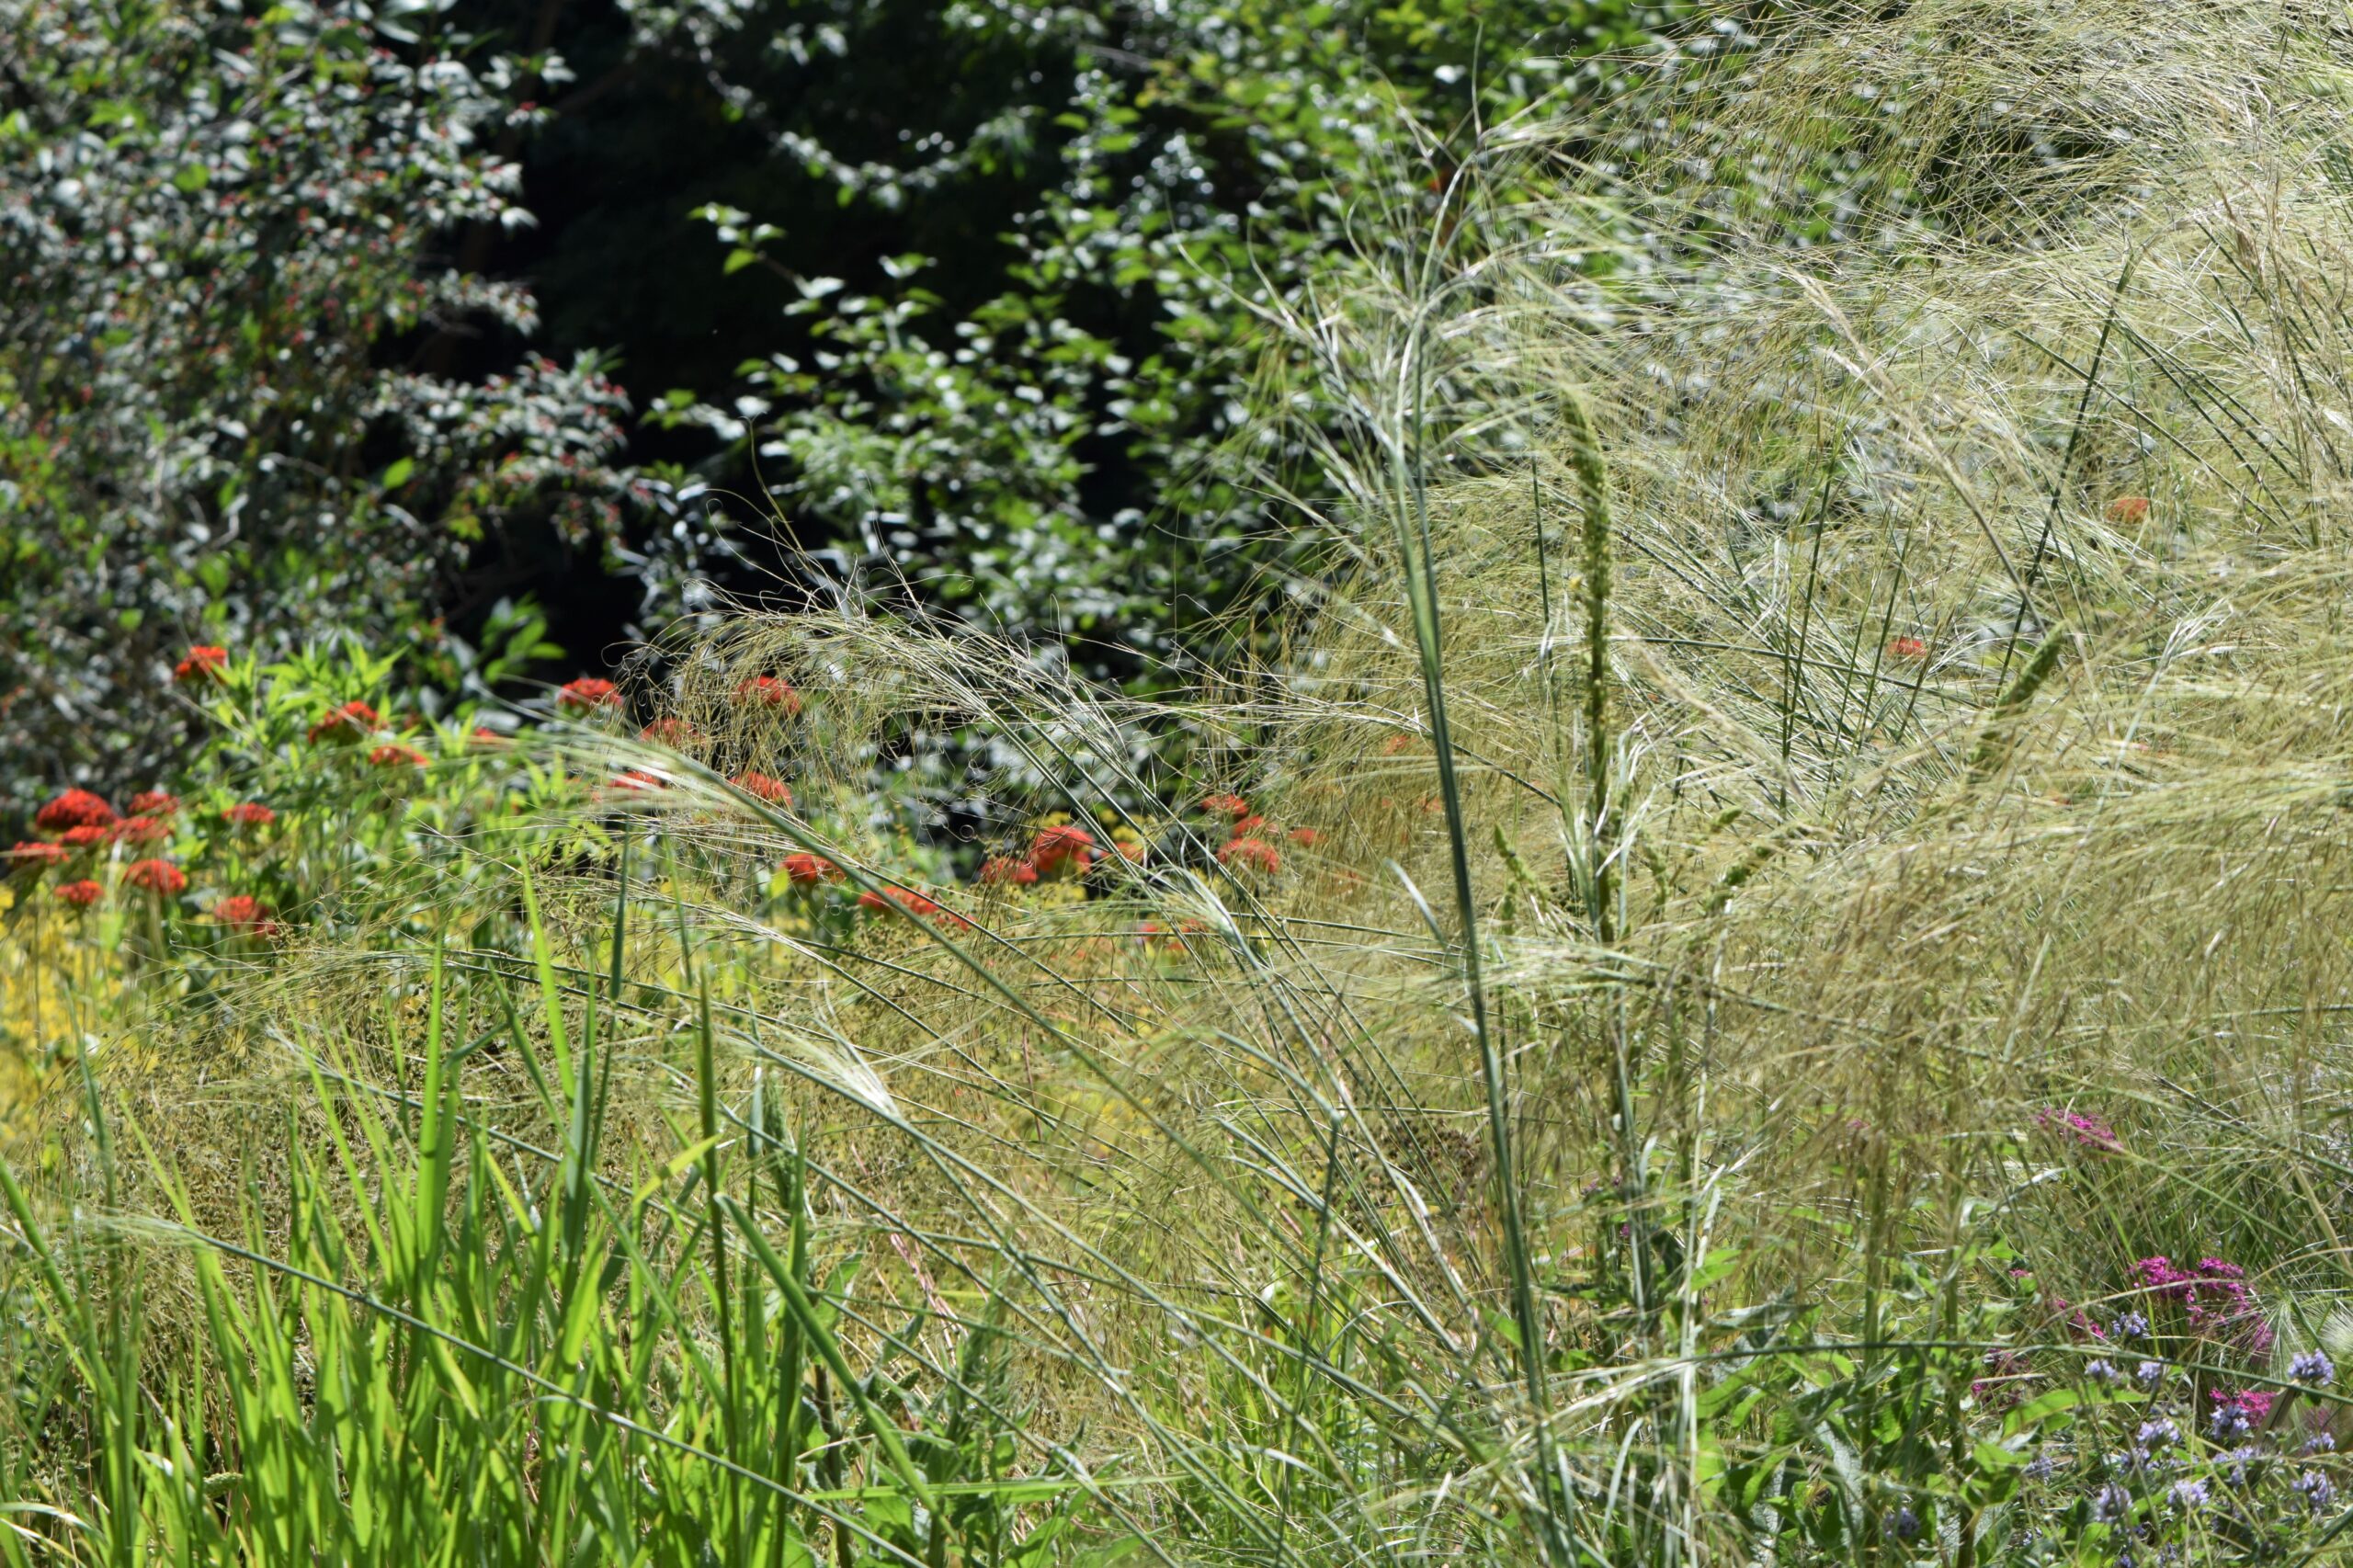 Photograph of needlegrass growing in a botanical garden. The needlegrass as feathery inflorescences.